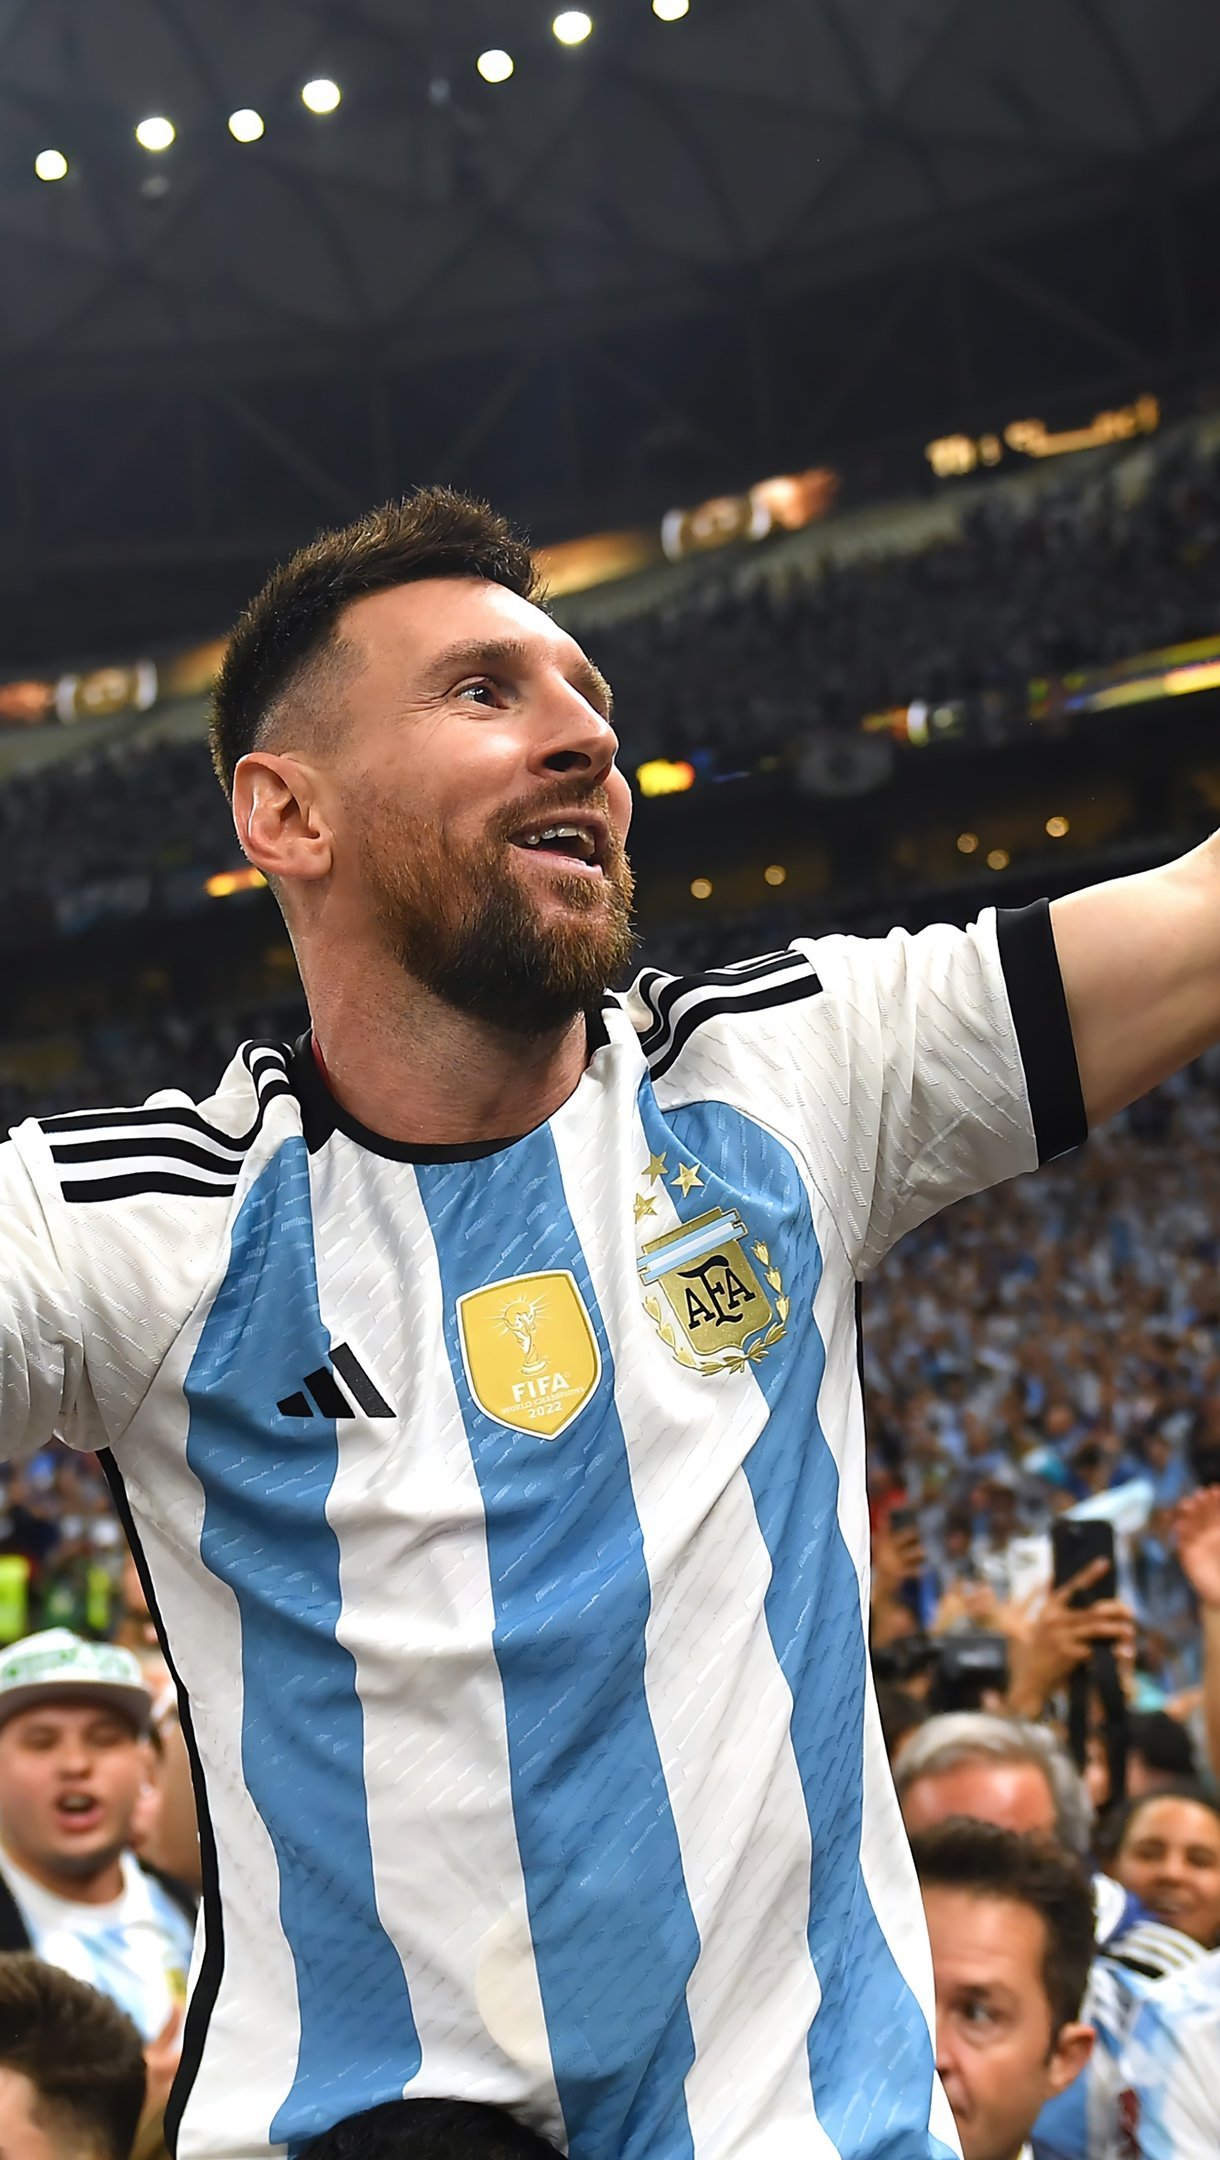 Messi Mundial: Khám phá những khoảnh khắc đáng nhớ của Lionel Messi trong các mùa giải World Cup trước đây. Hãy cùng ngắm nhìn tài năng của anh trong các trận đấu đỉnh cao và những bàn thắng đẹp mắt.